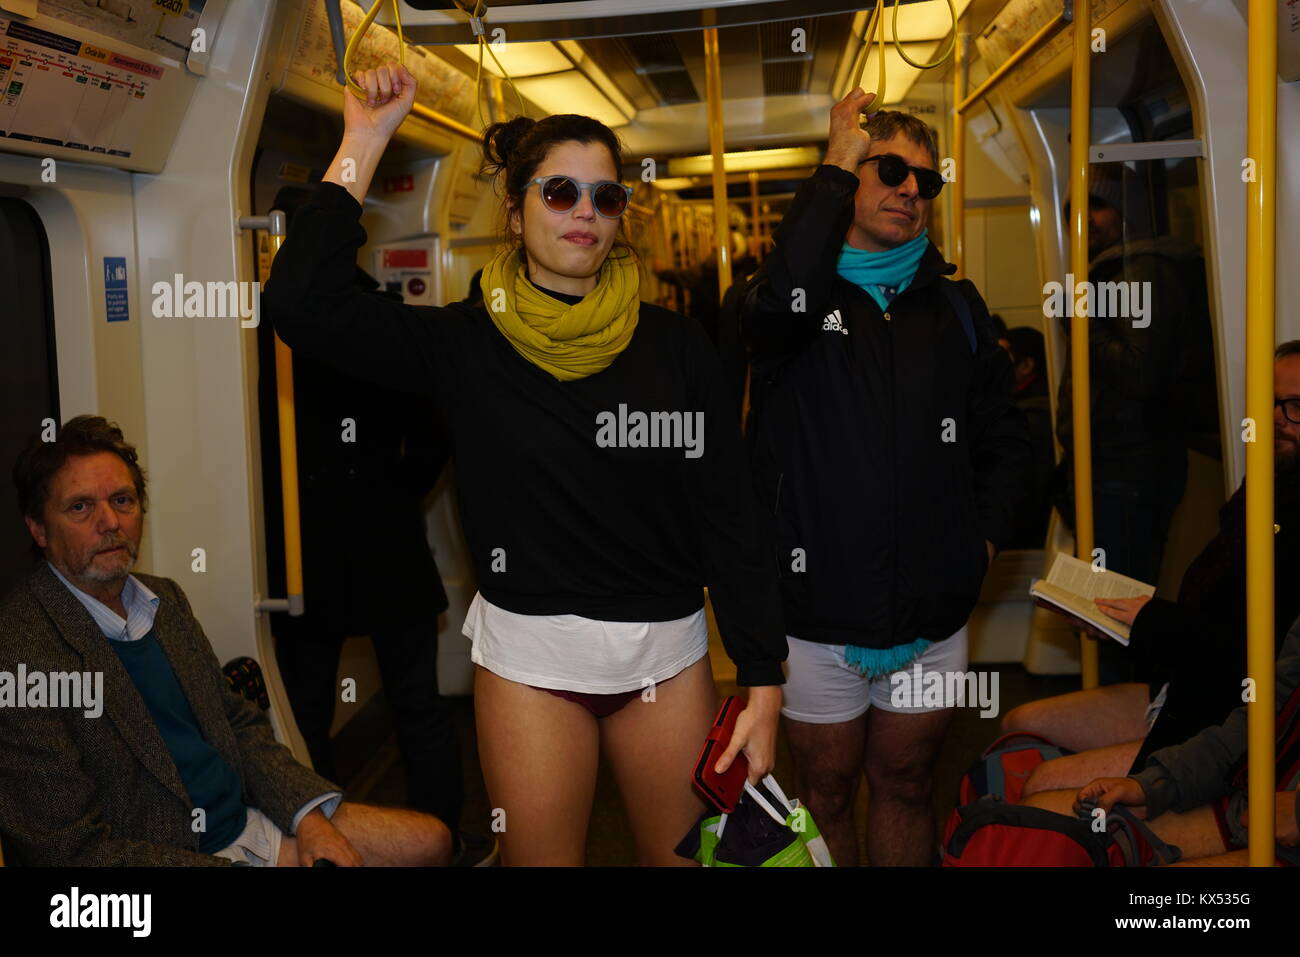 Sin pantalones en Metro (No Pants Subway Ride) el 7 de enero de 2018 en Londres la anual "sin pantalones en Metro' o 'No Pants Subway Ride" tuvo lugar en Foto de stock